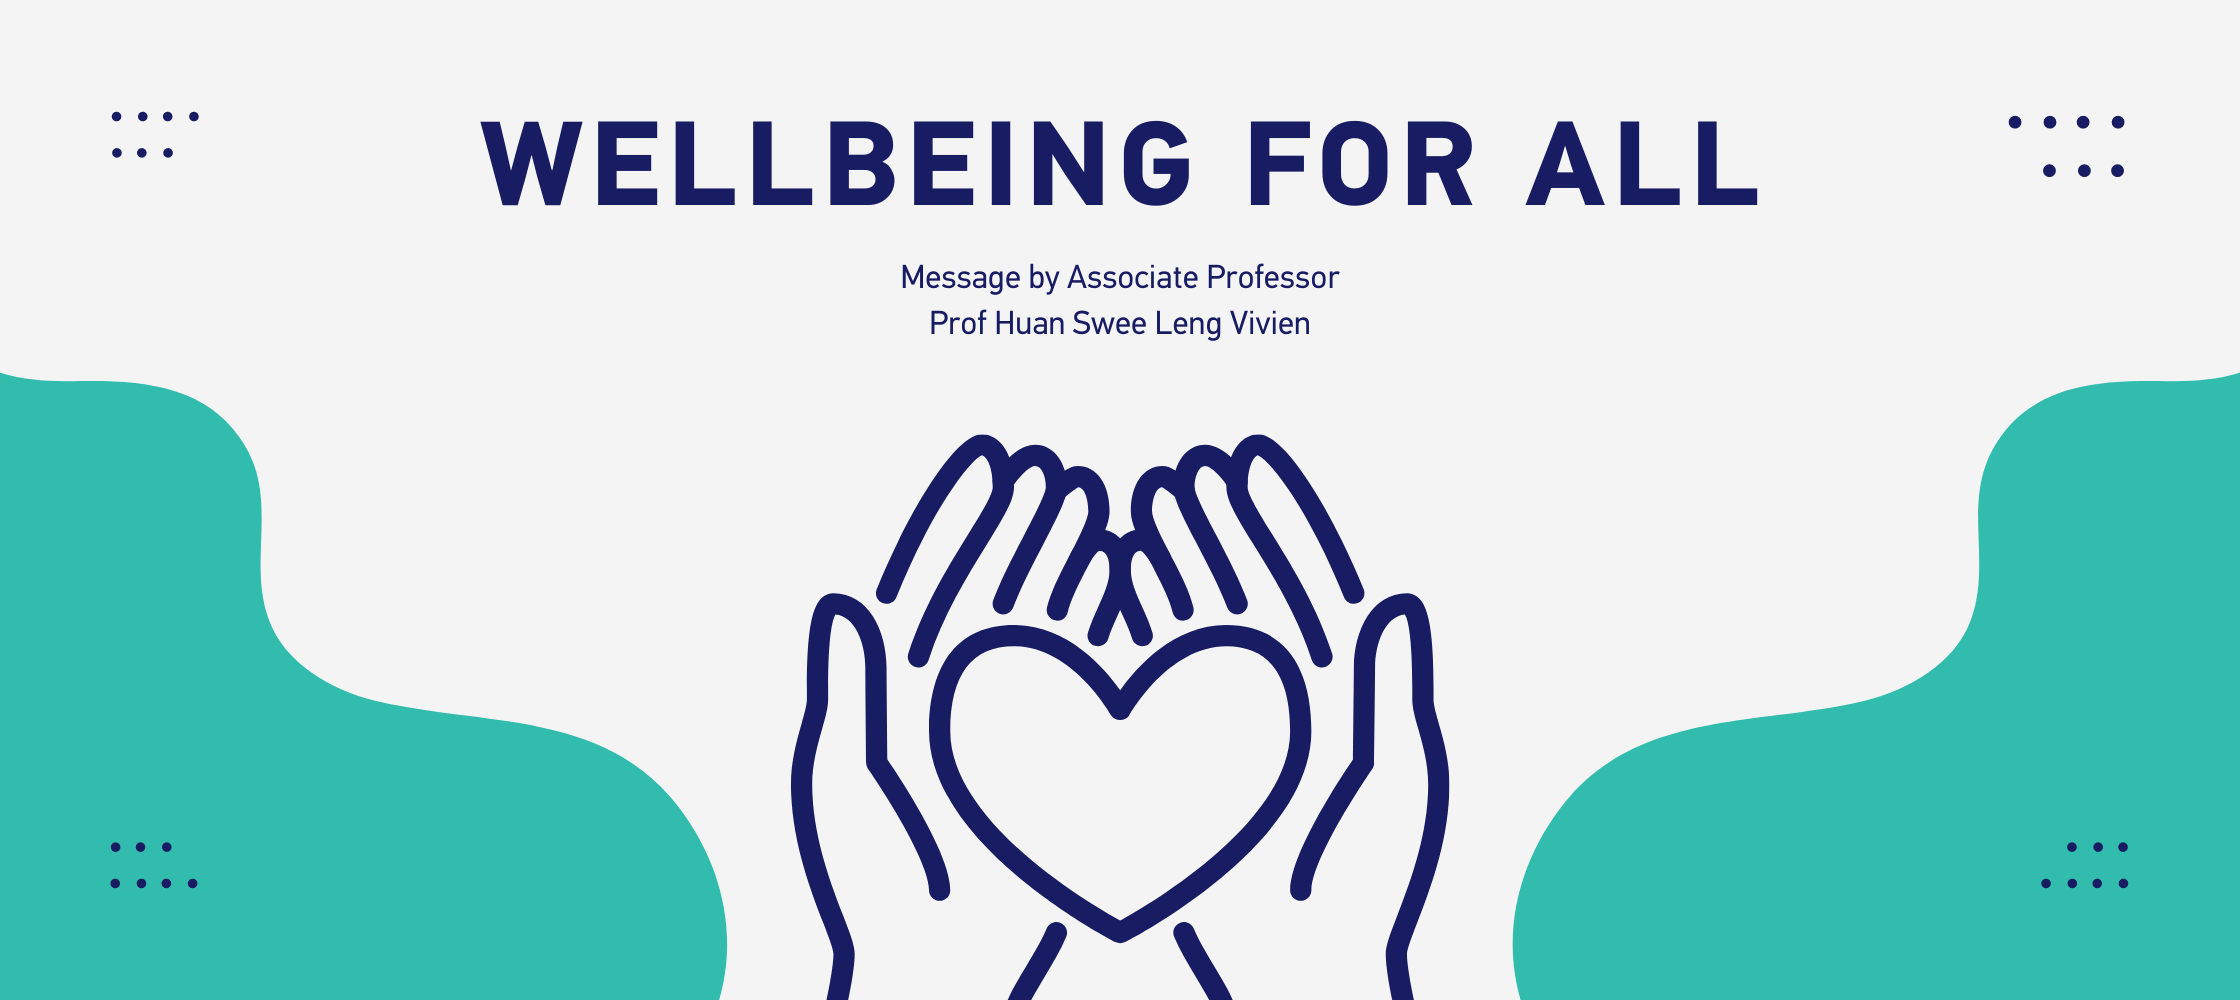 Wellbeing message by Associate Professor Prof Huan Swee Leng Vivien